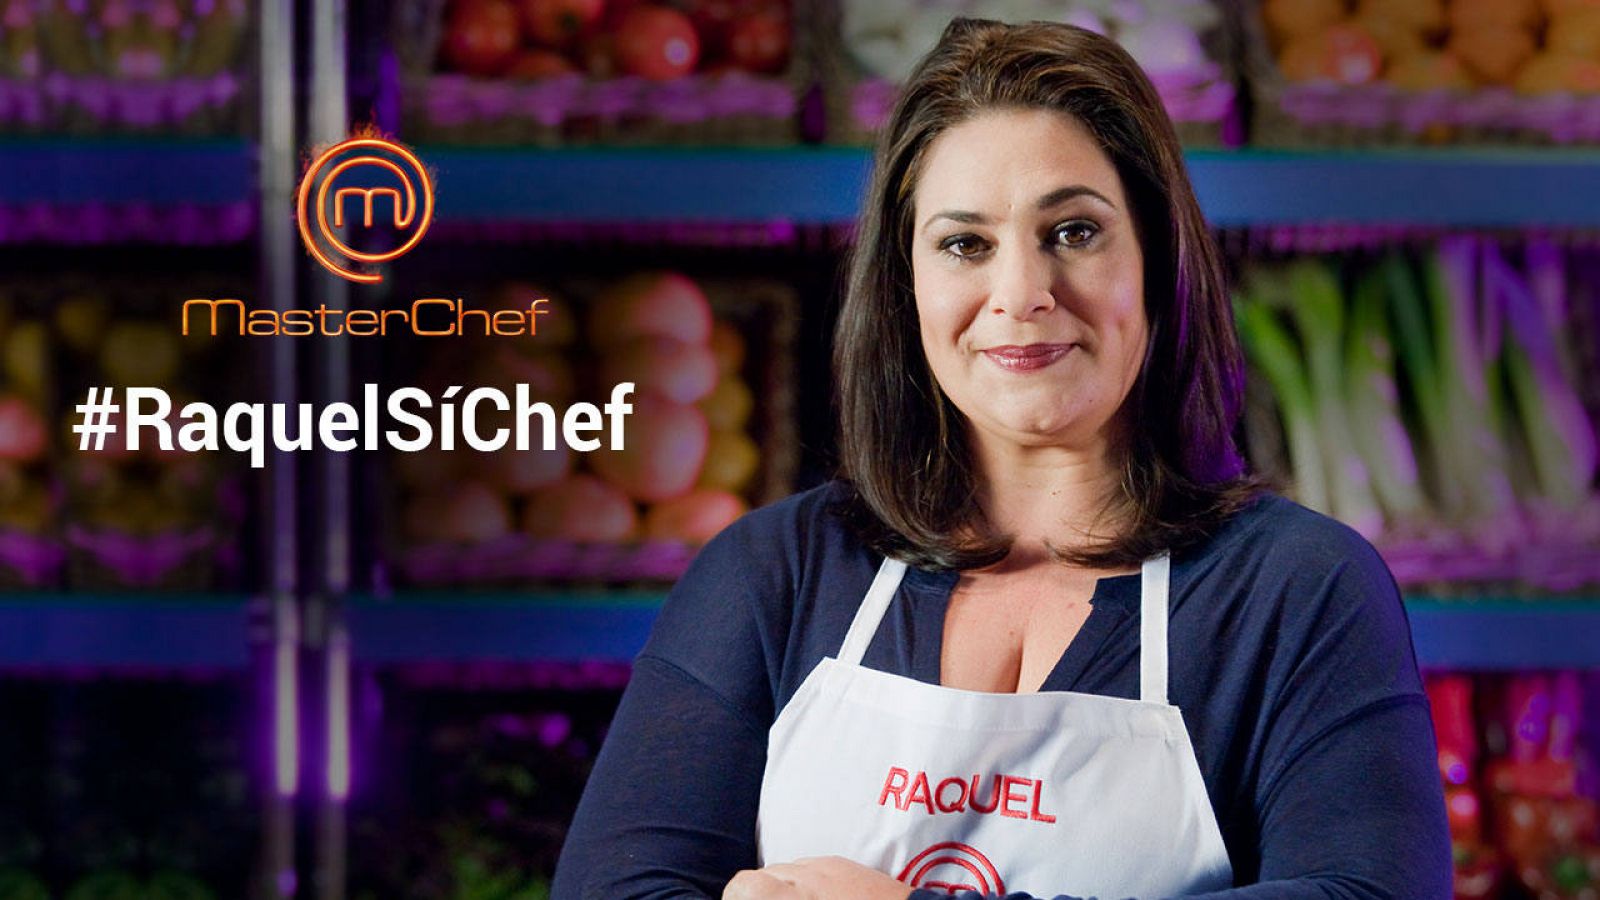  Raquel, una de las gemelas de esta edición de MasterChef, visita 'Sí, Chef'. Sigue en directo el videoencuentro y envía tus preguntas con #RaquelSíChef.